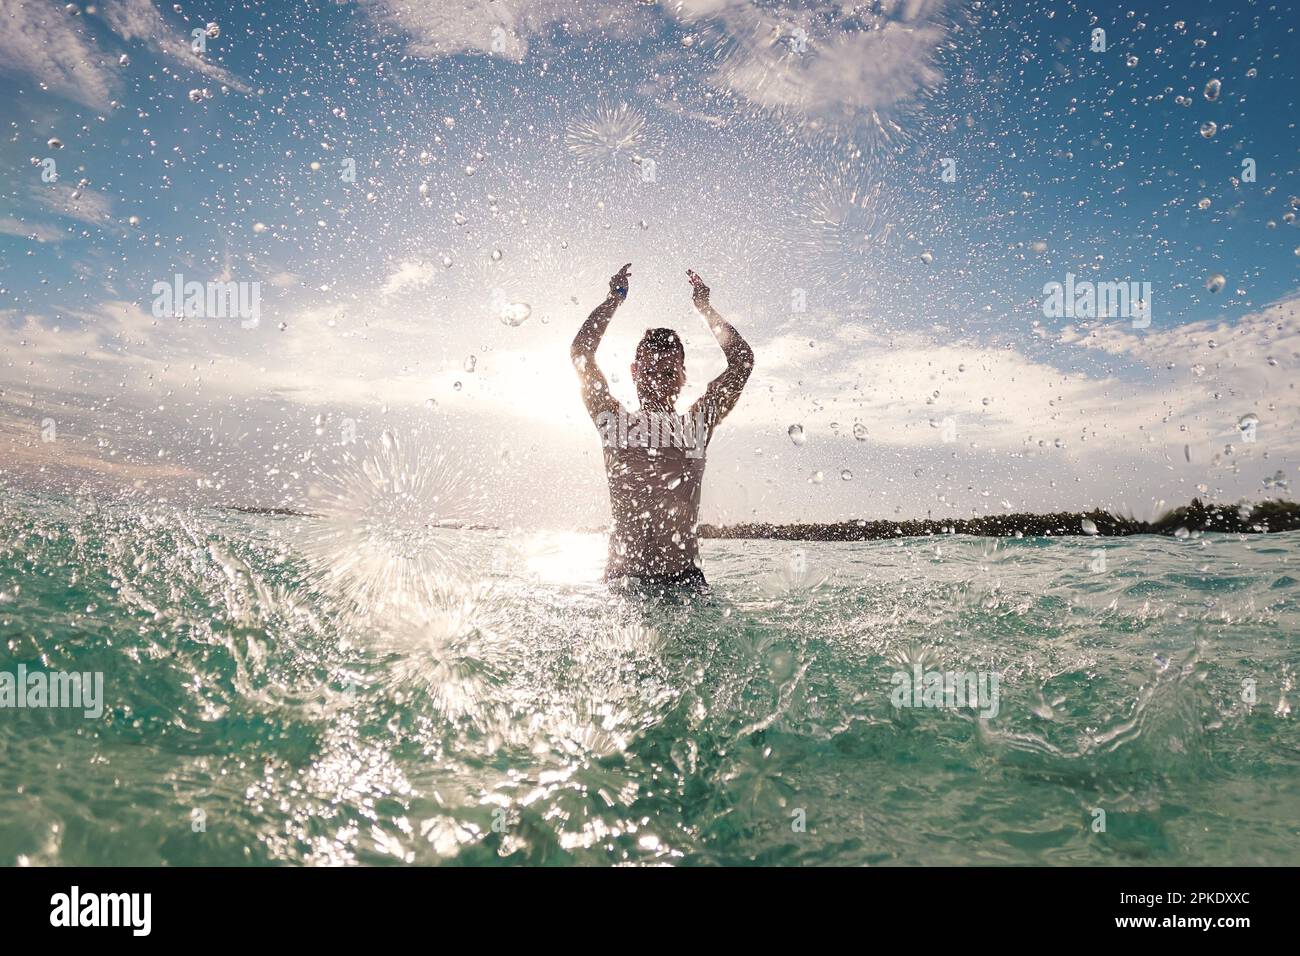 Silhouette d'homme joyeux debout en mer et éclaboussant l'eau vers l'appareil photo. Journée ensoleillée en destination tropicale pendant les vacances à la plage. Banque D'Images